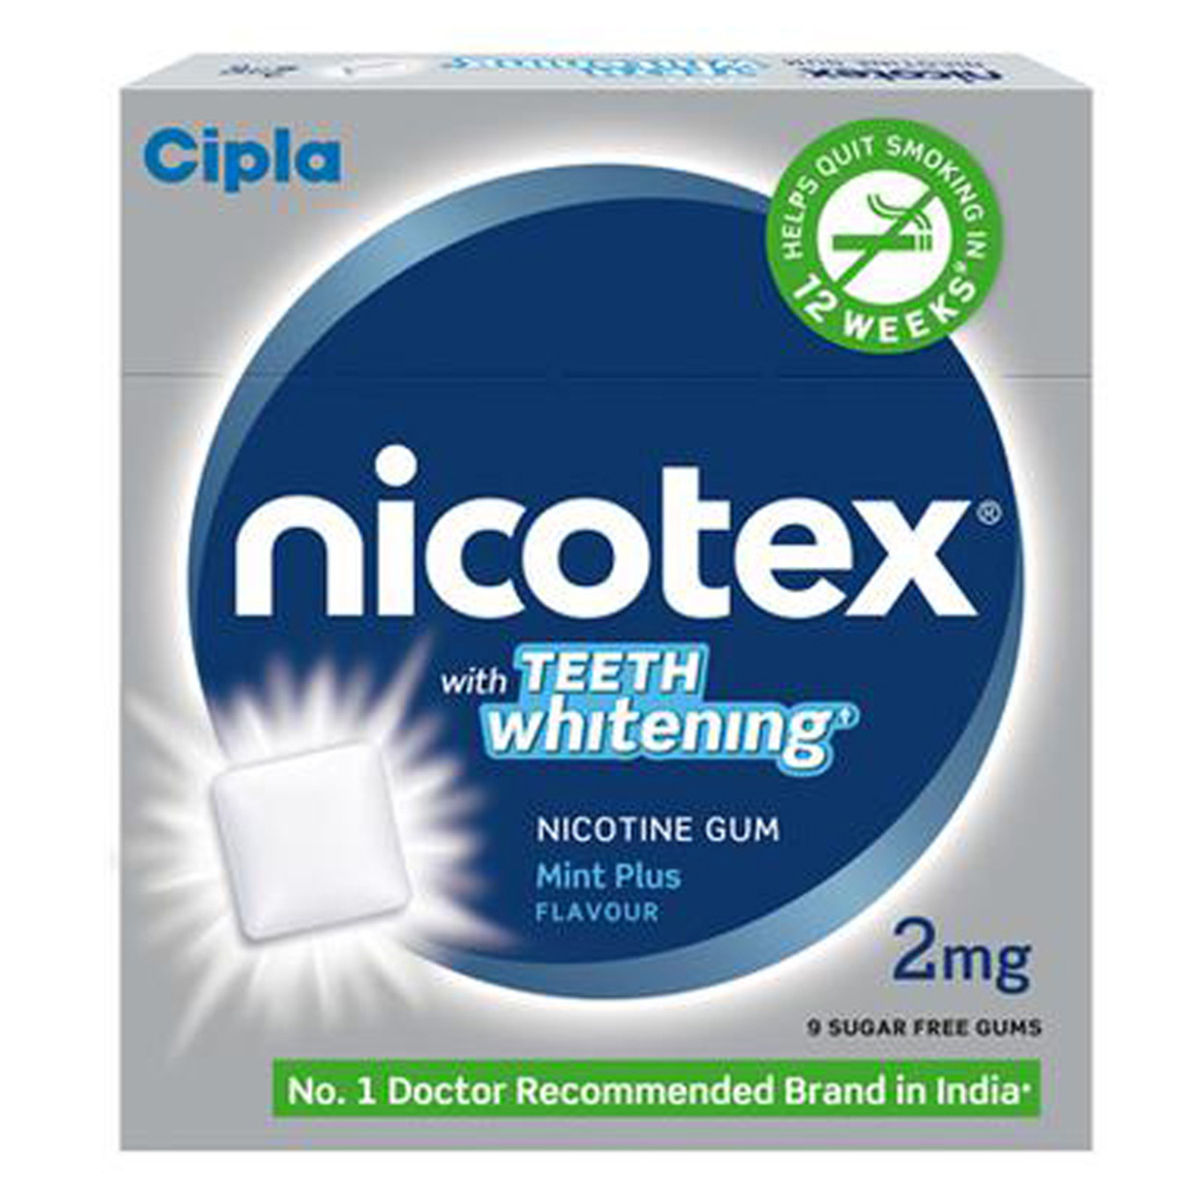 Buy Nicotex Teeth Whitening Mint Plus 2mg Online